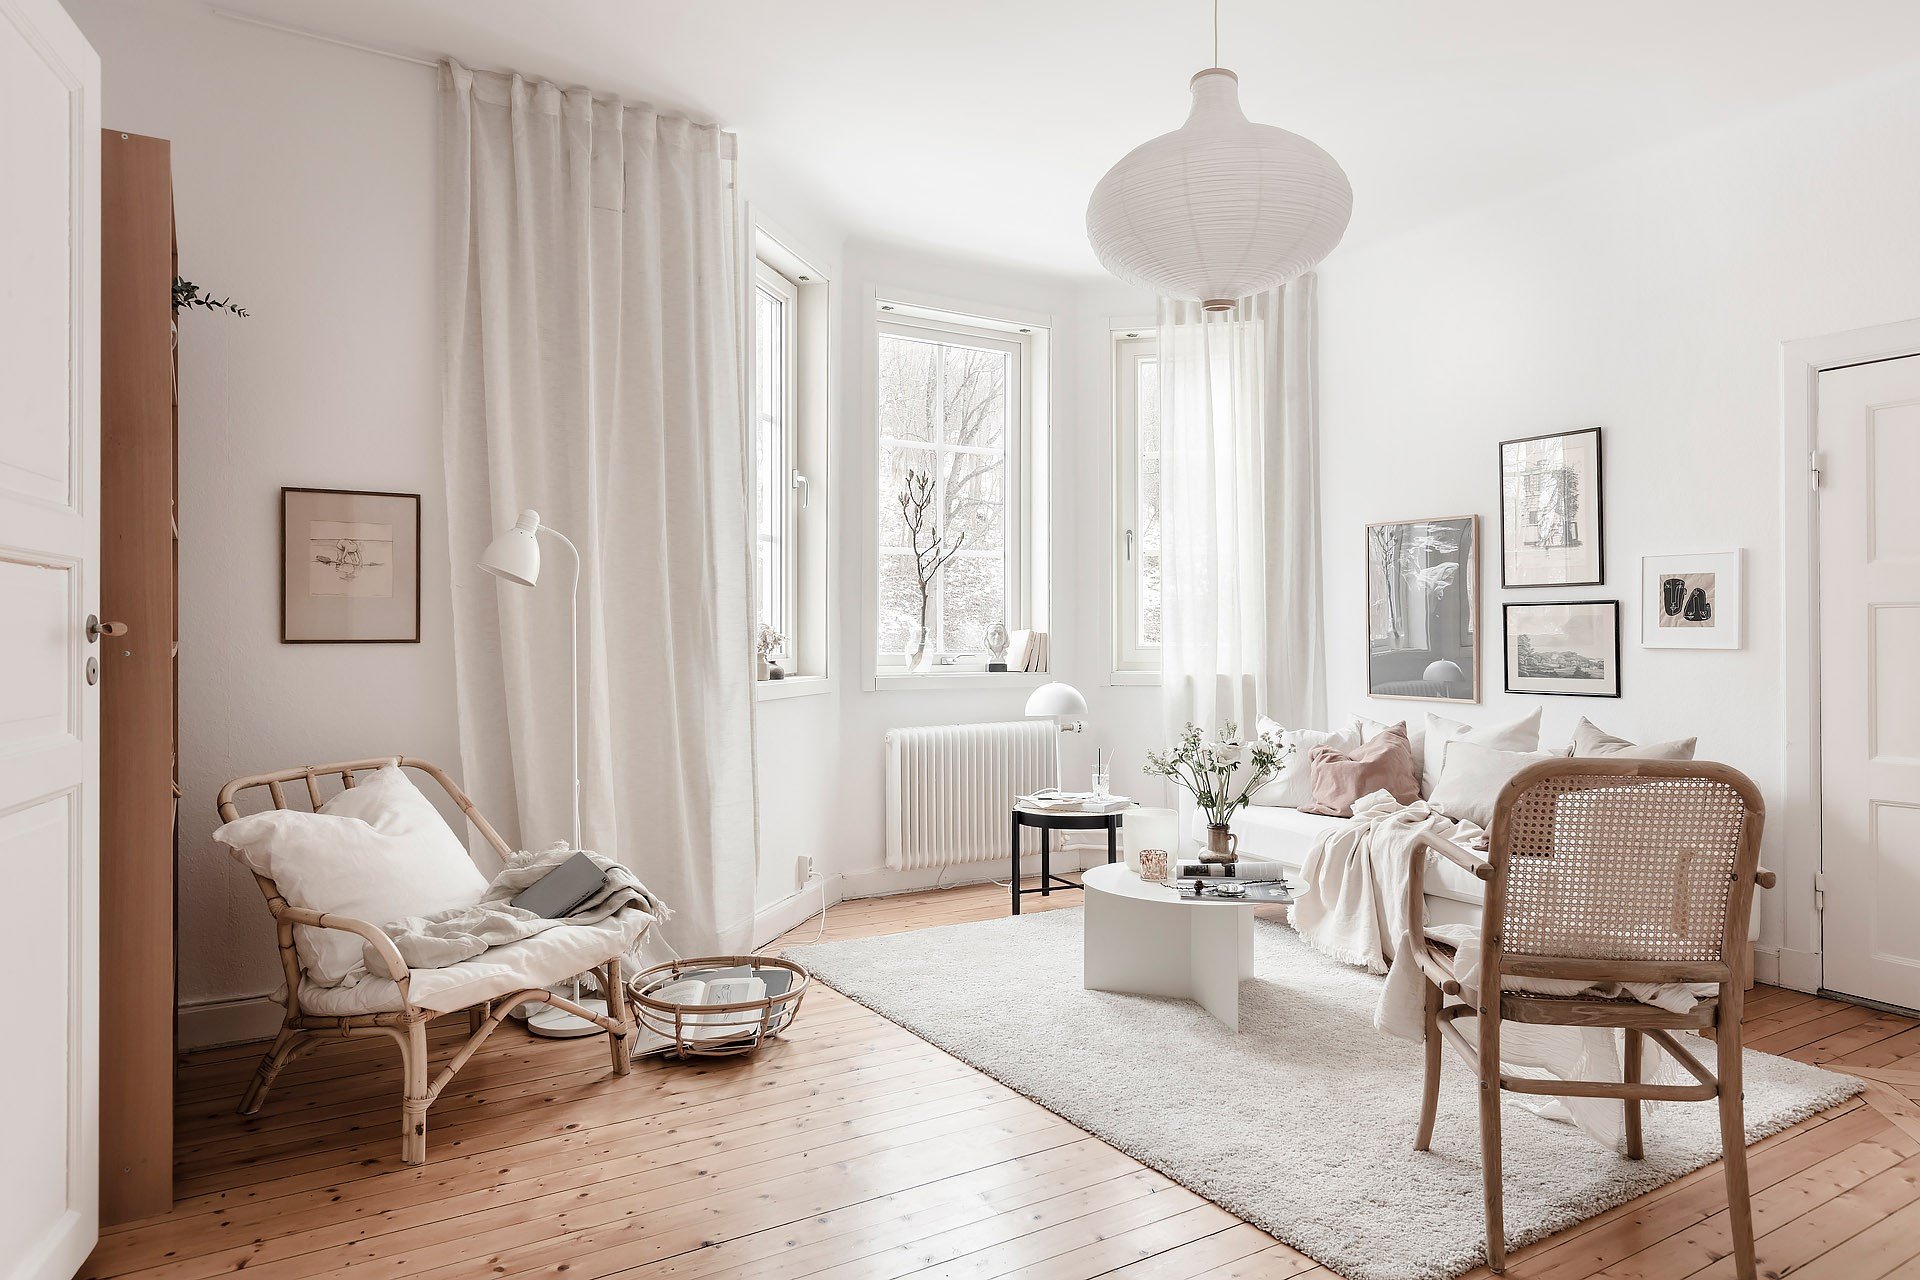 Mini piso en Suecia con decoracion moderna nordica salon con lampara de techo